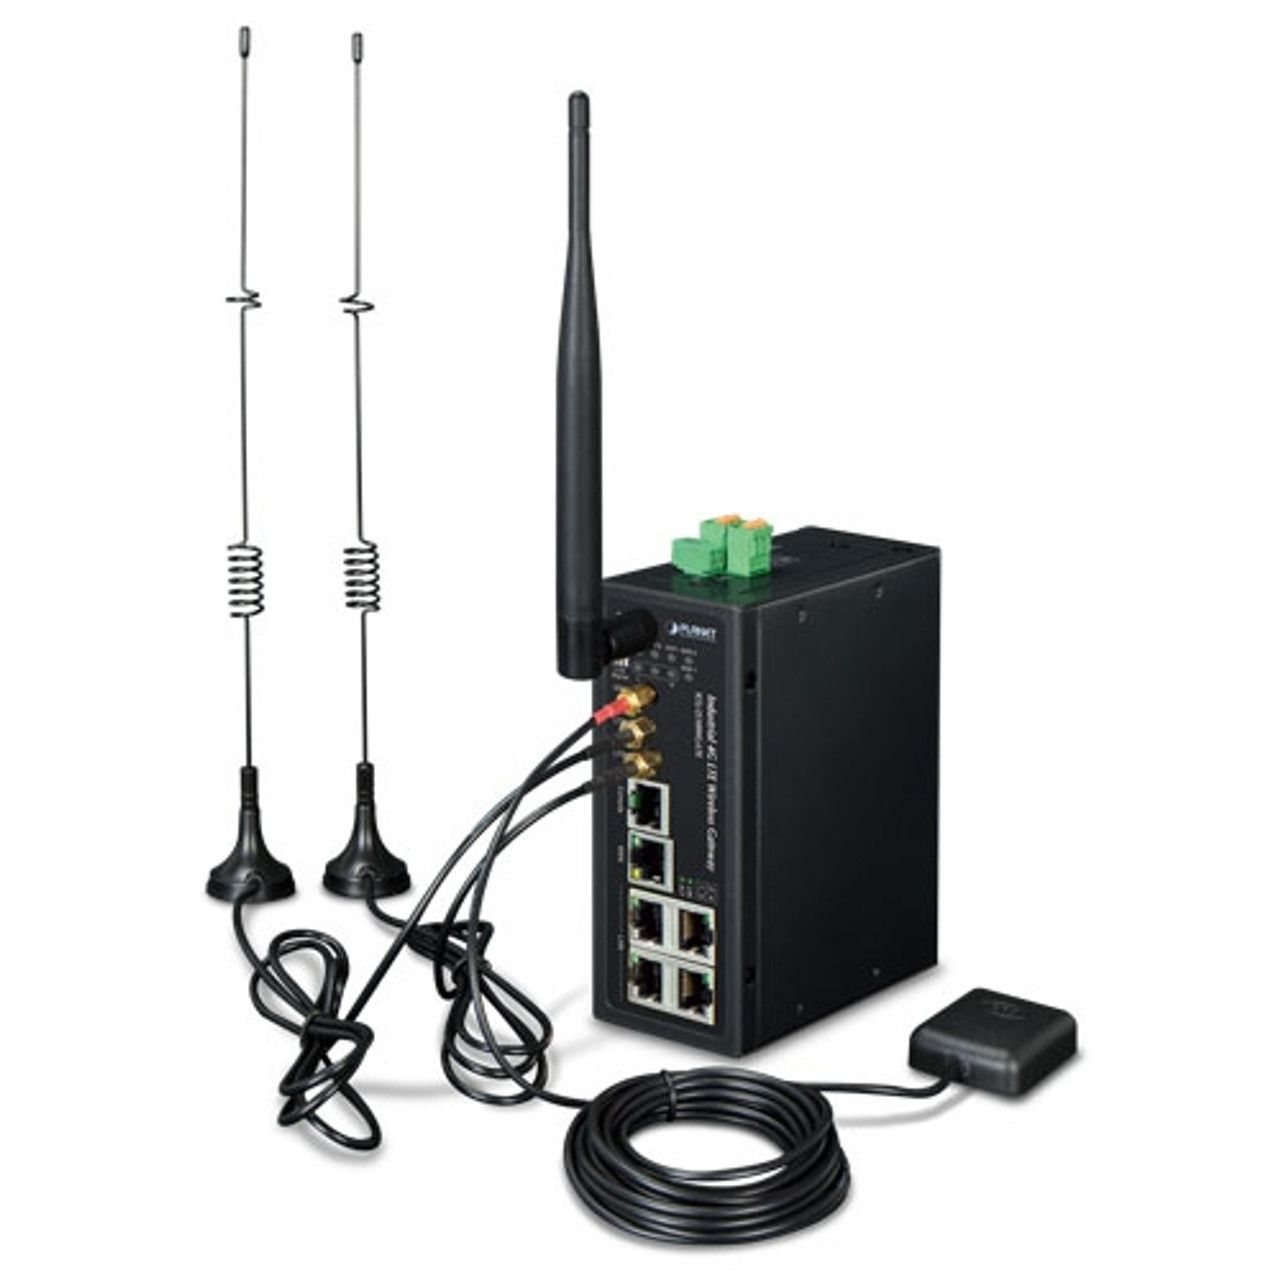 ICG-2515W-NR Industrial 5G NR Cellular Wireless Gateway with 5